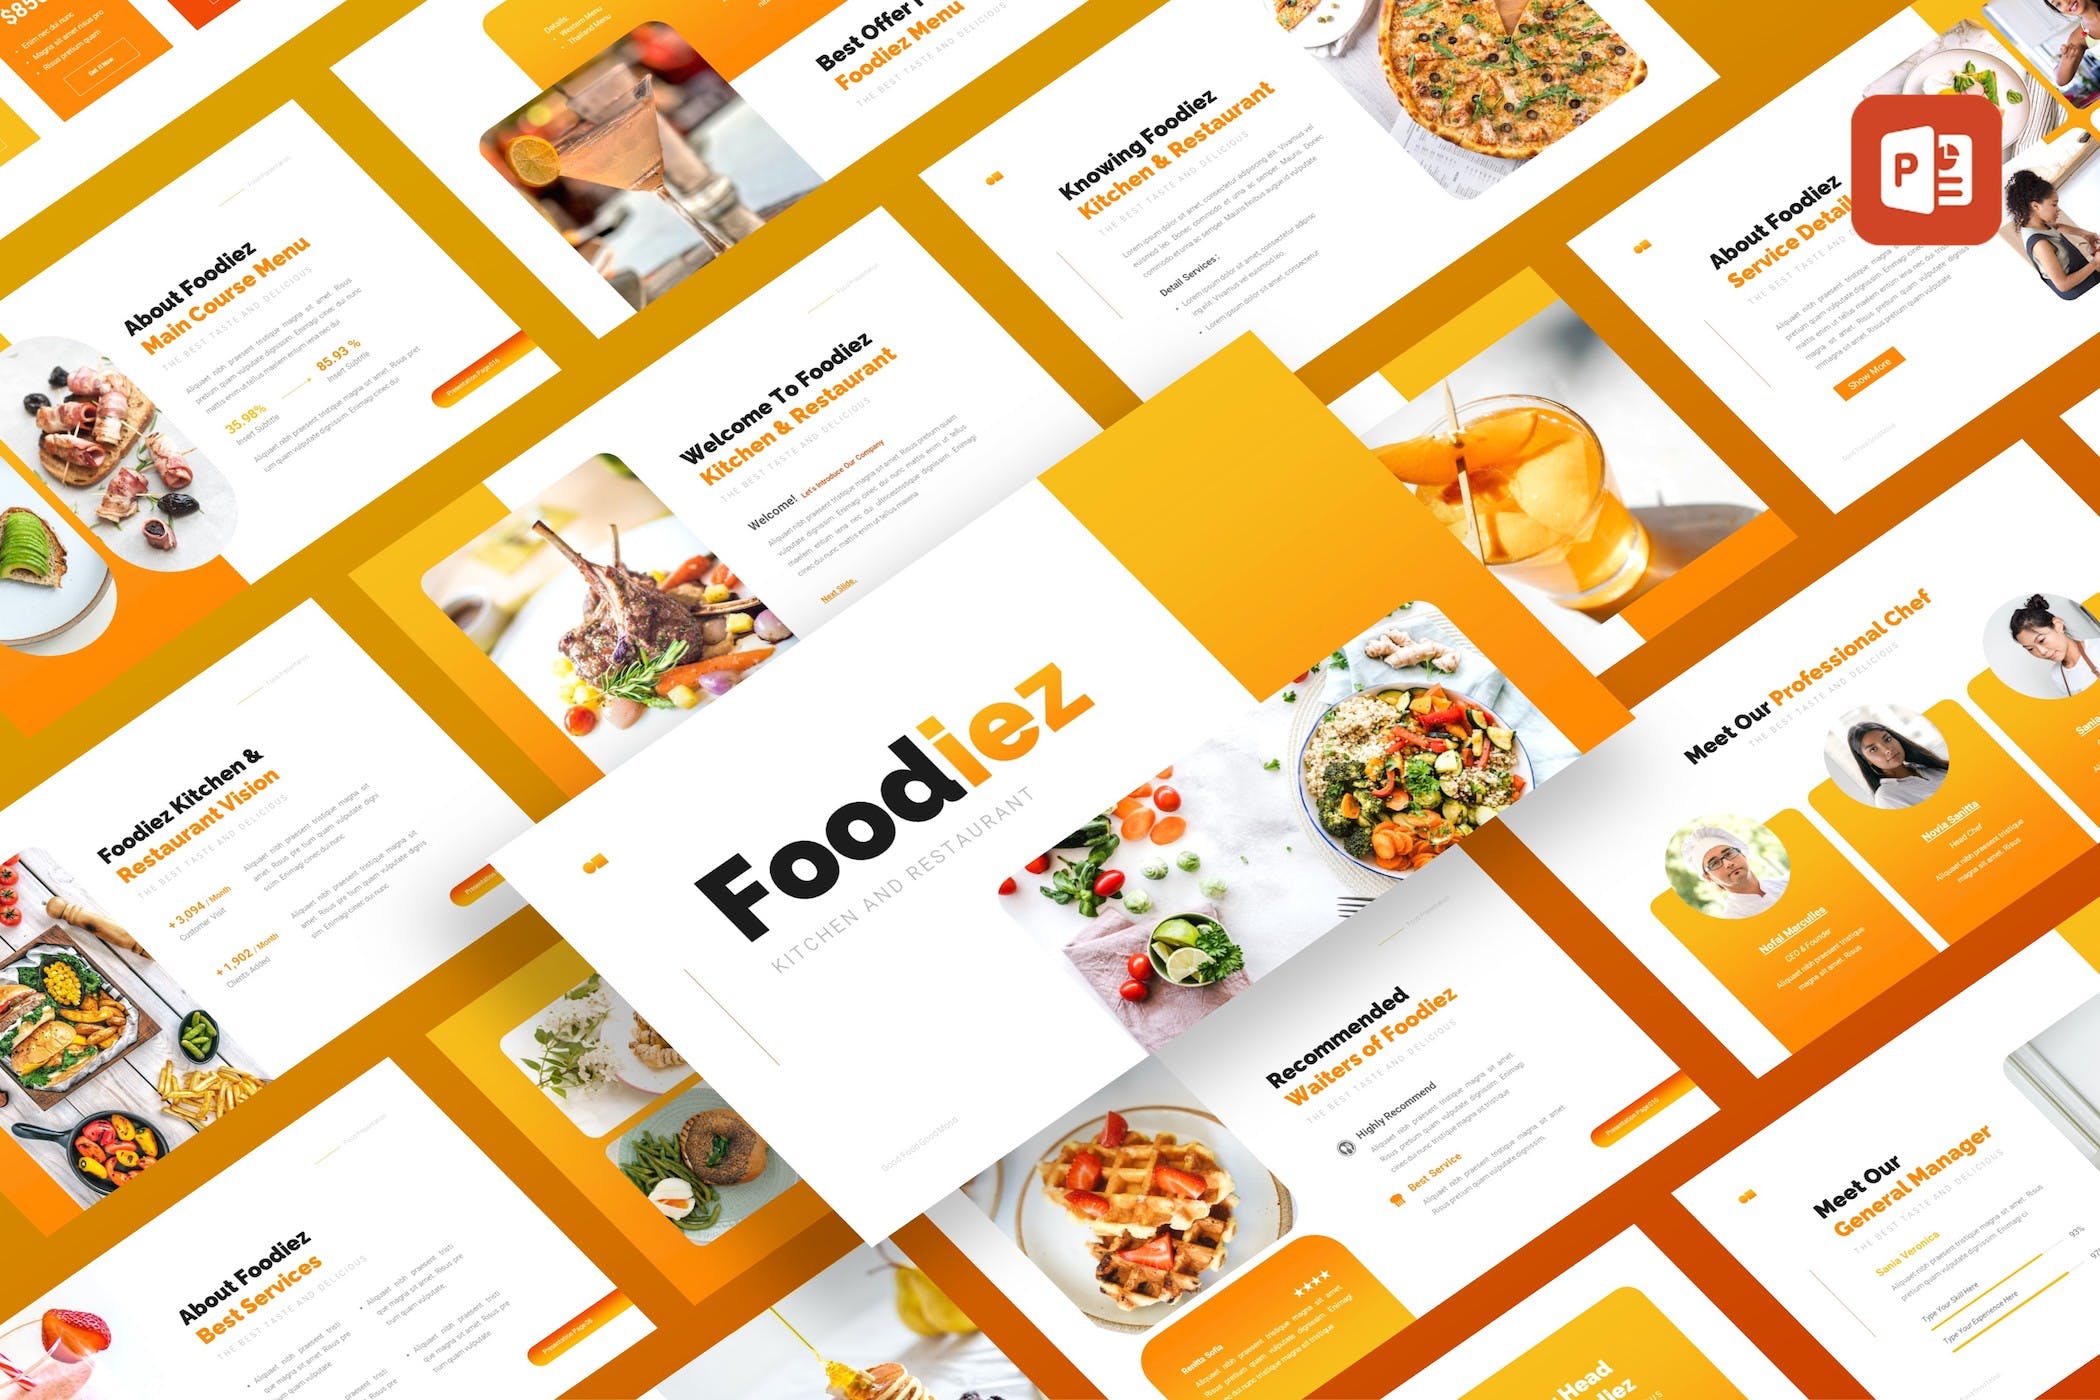 厨房和餐厅PPT创意模板 Foodiez Kitchen & Restaurant PowerPoint Template 幻灯图表 第1张